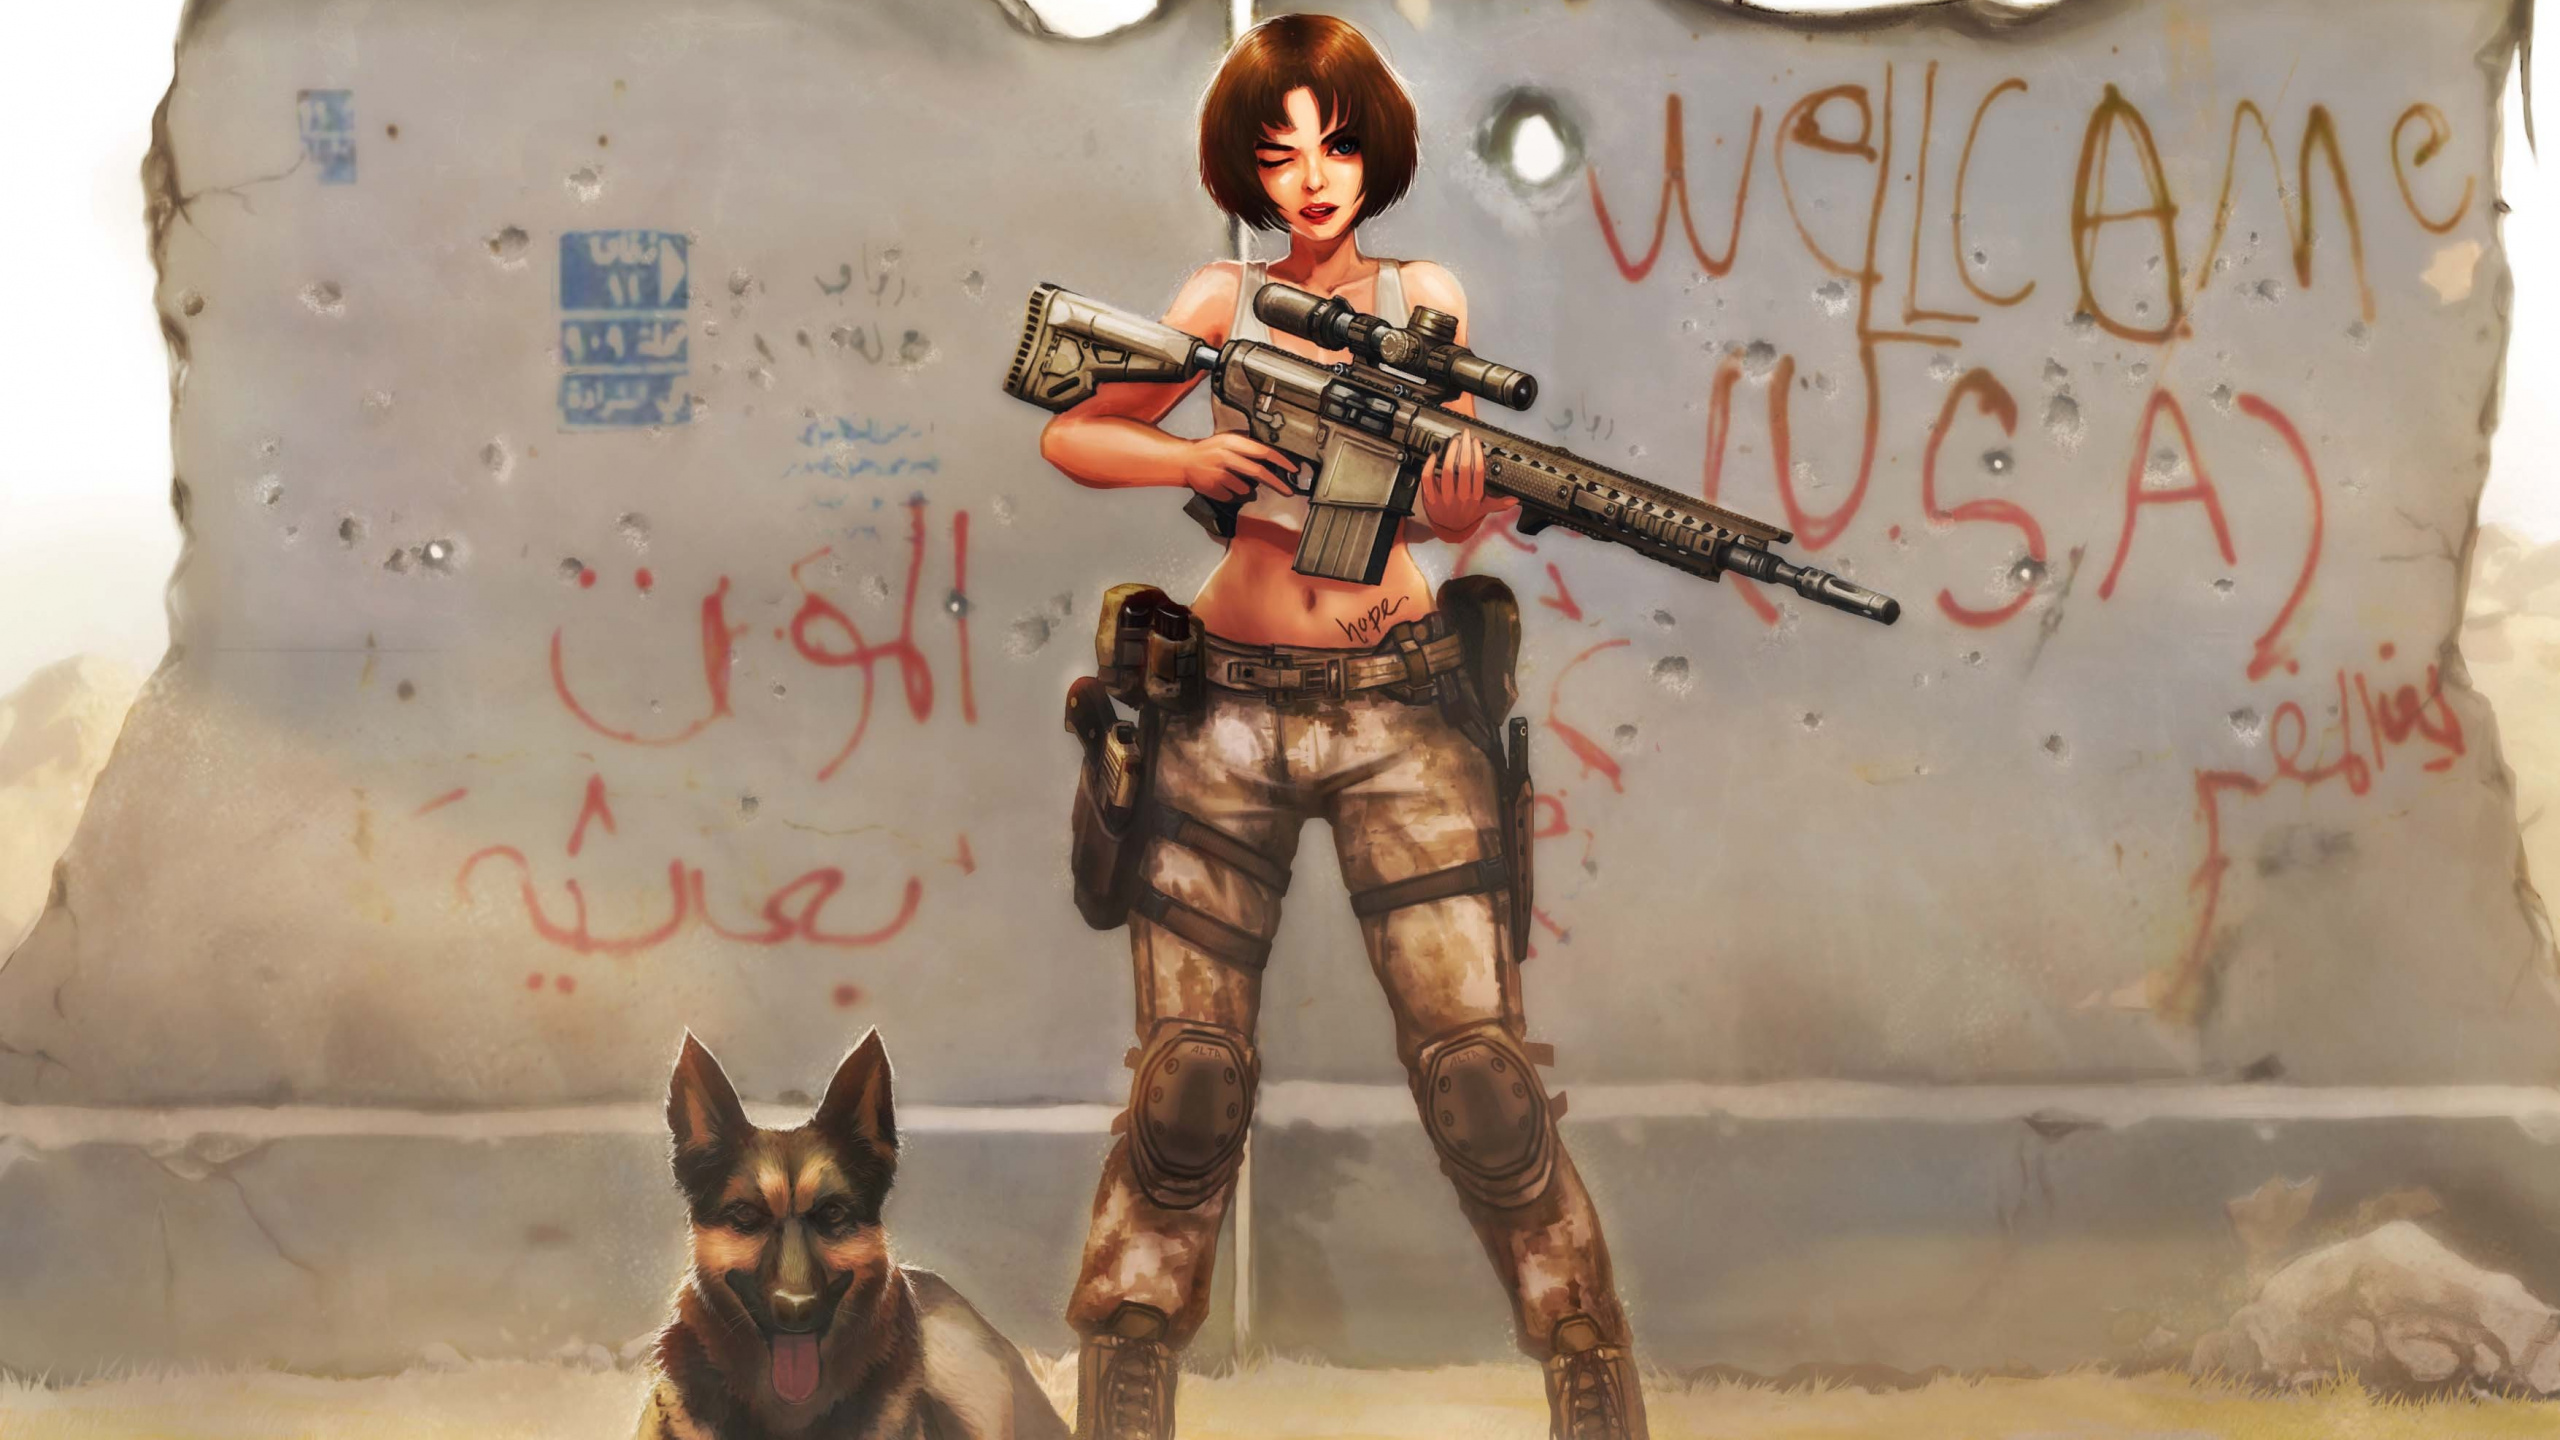 看门狗, 厚厚的土, 女孩的枪, 武器, 虚构的人物 壁纸 2560x1440 允许